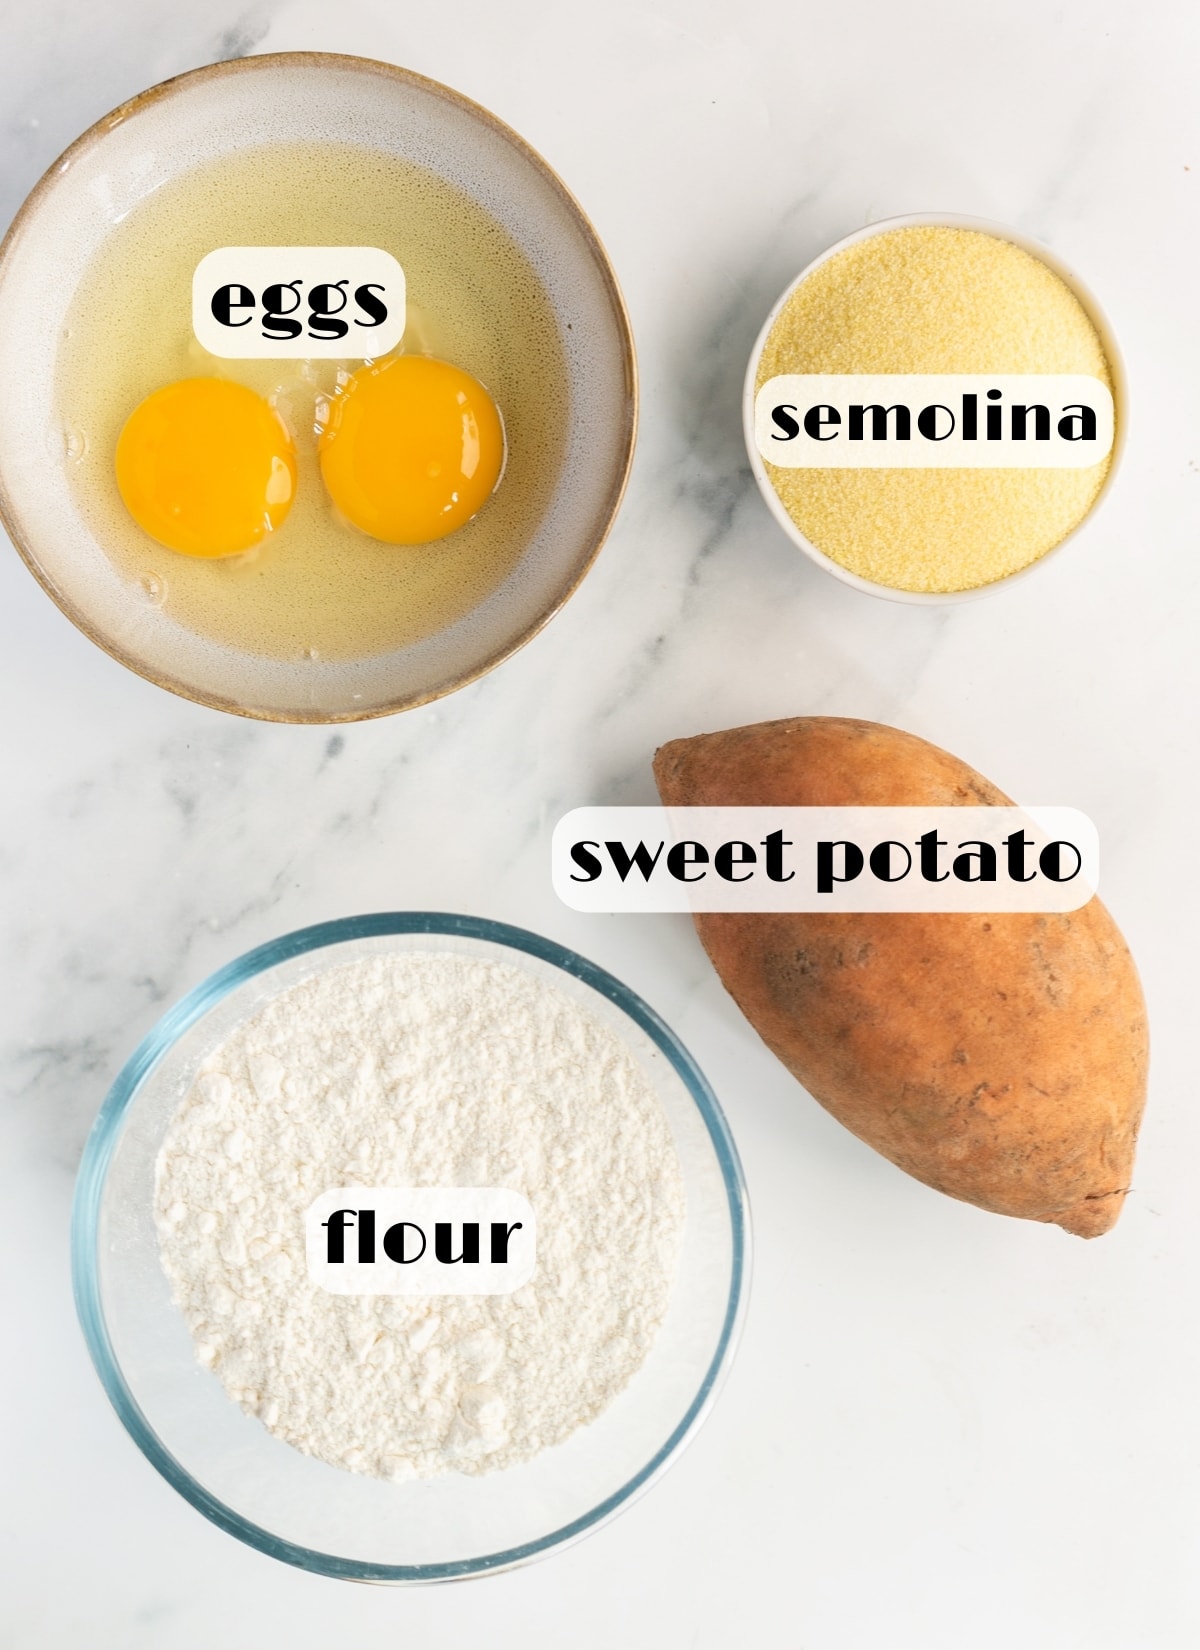 sweet potato pasta ingredients: sweet potato, eggs, flour, semolina.